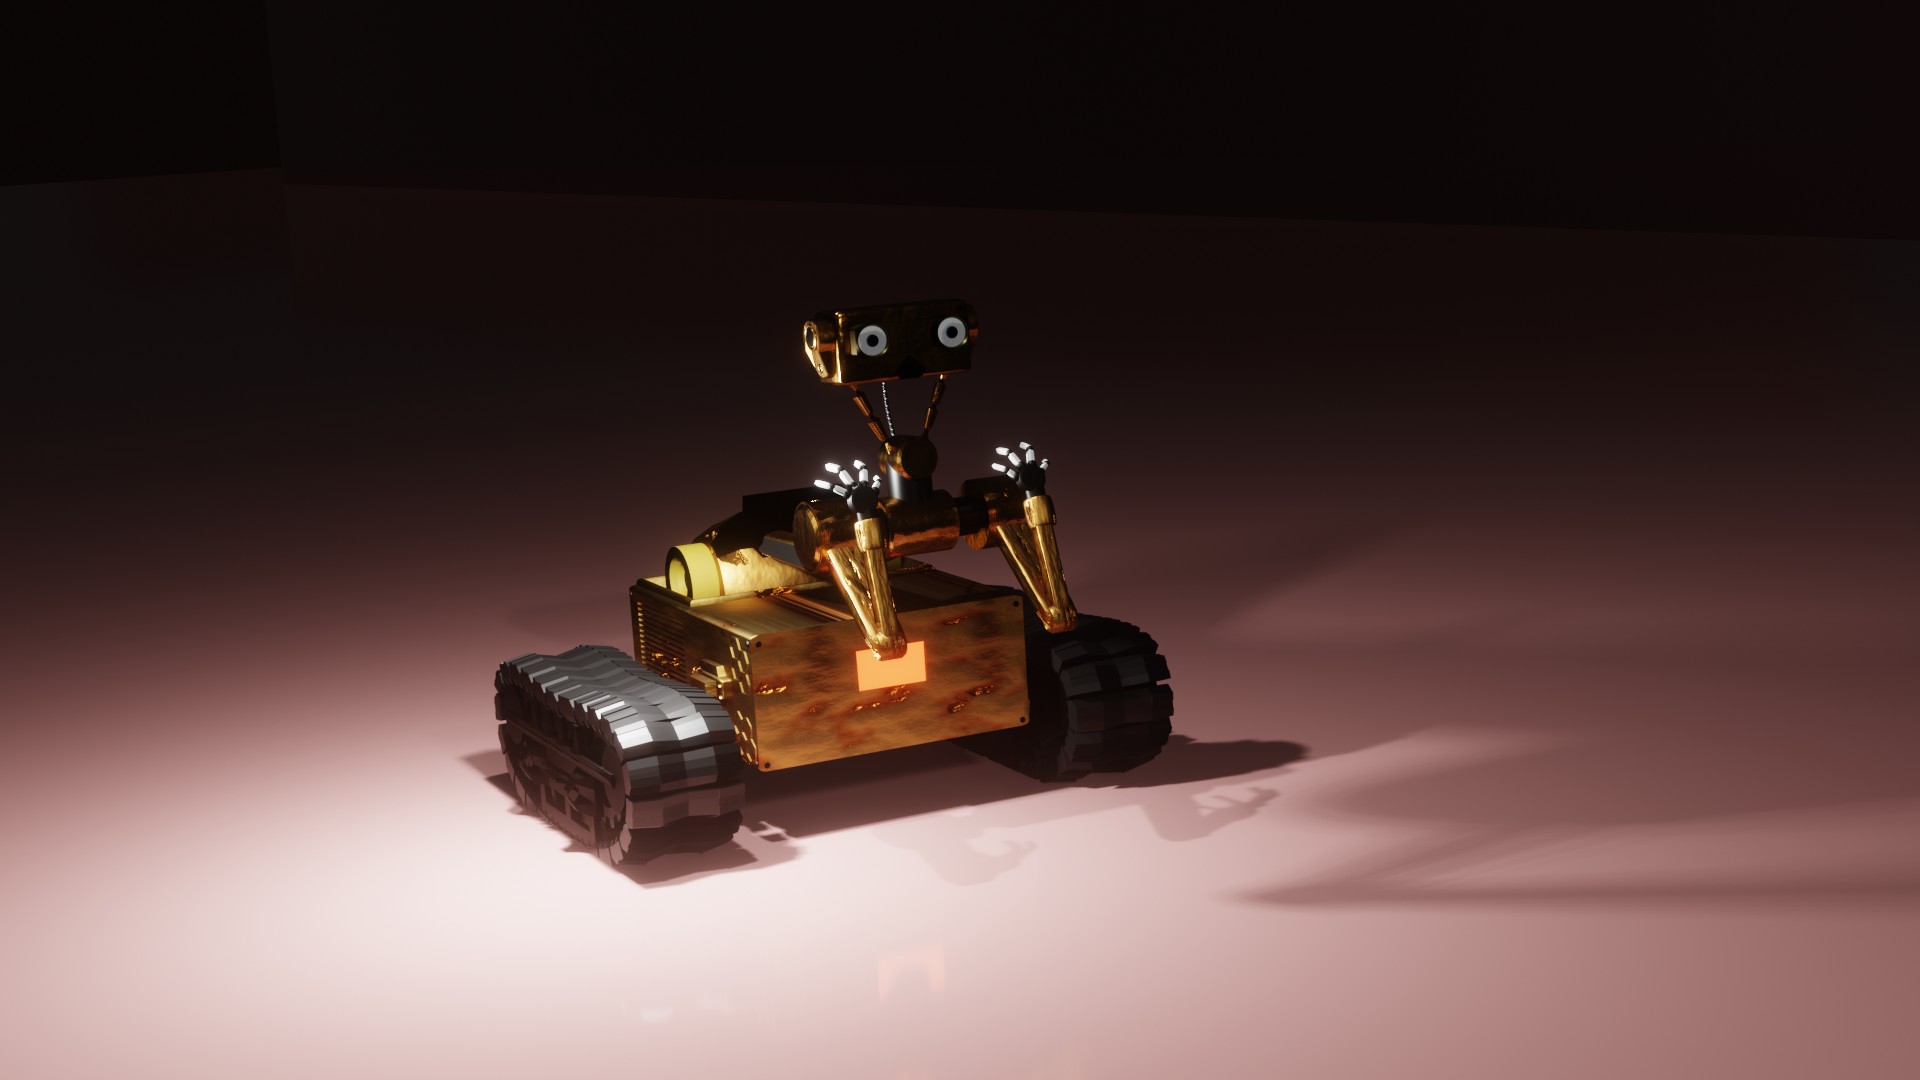 Sad E - Robot preview image 1